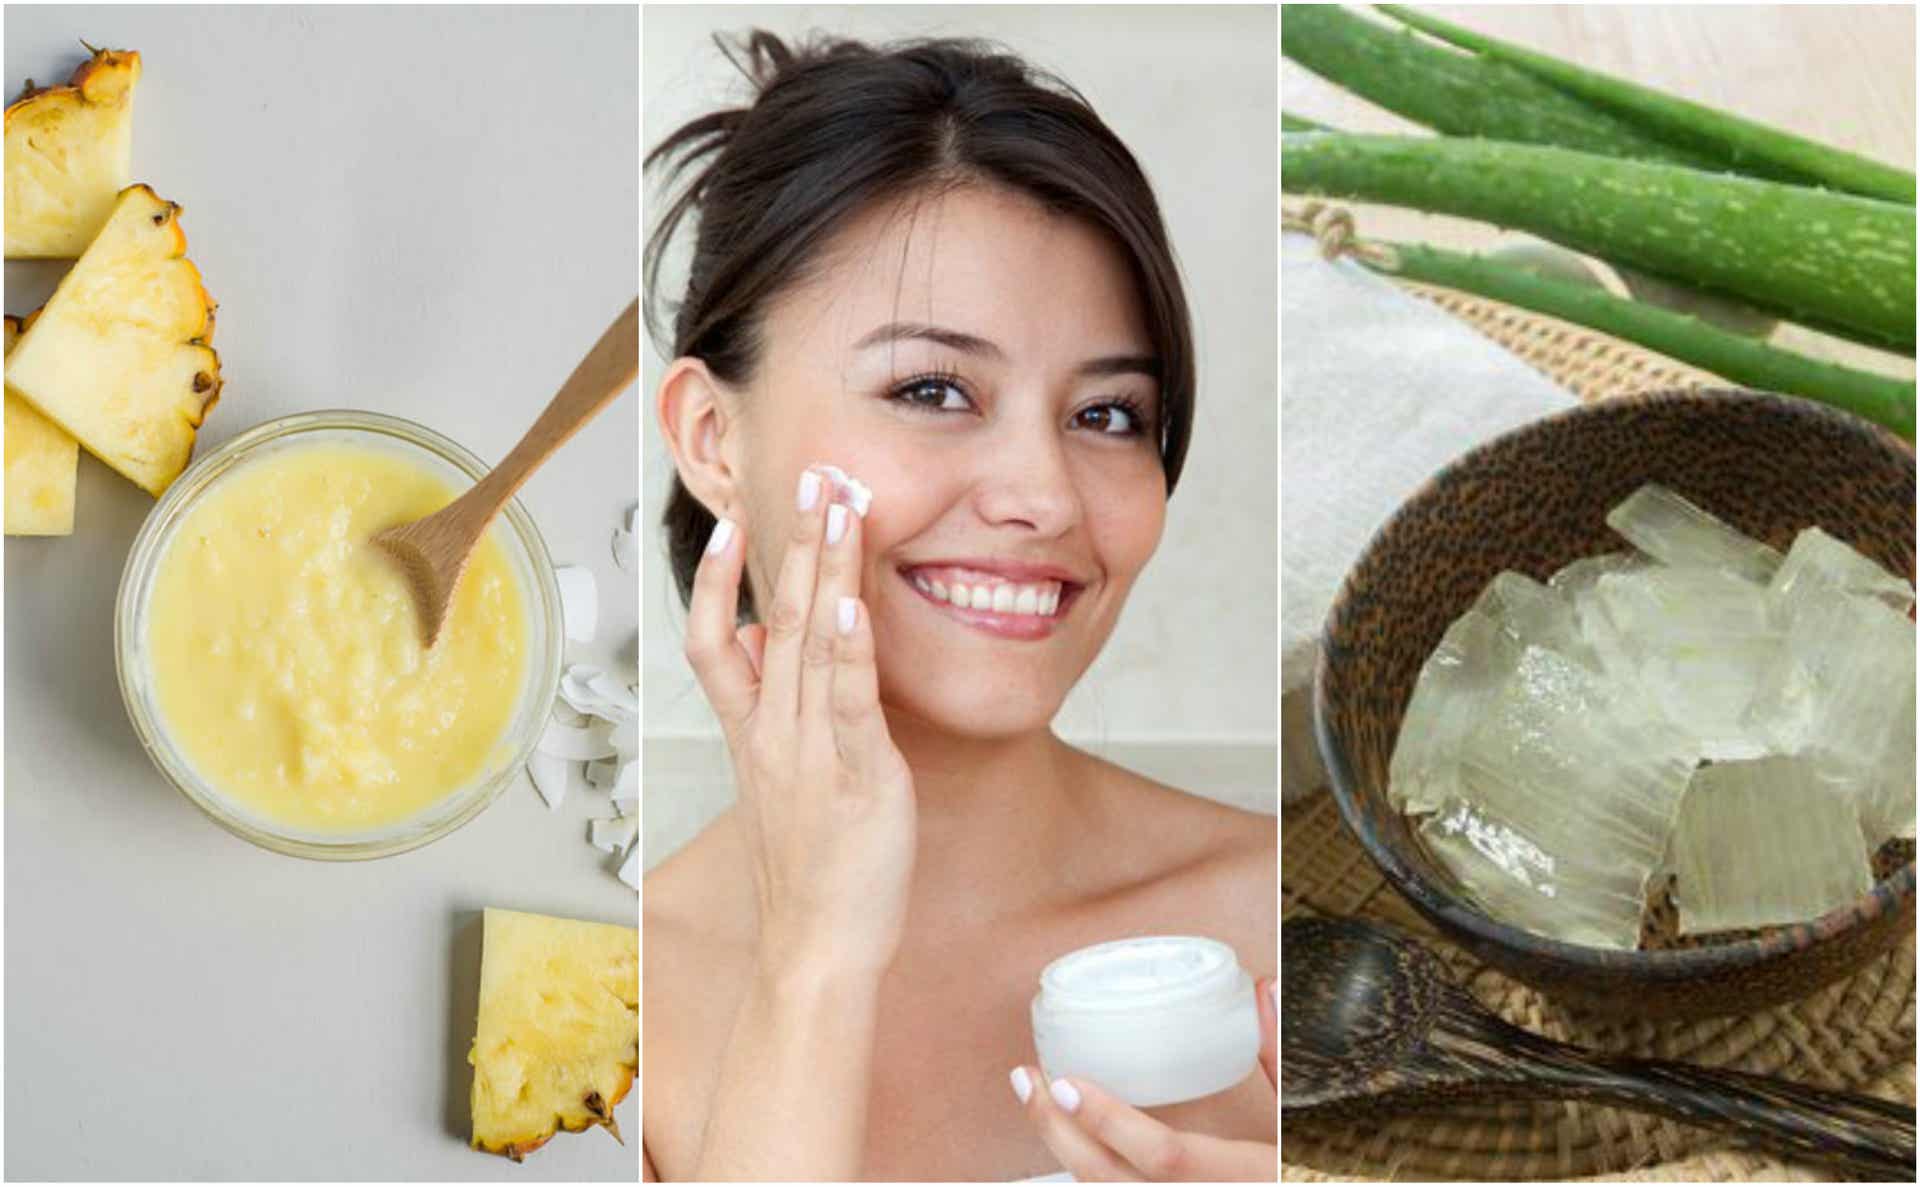 Reafirma la piel del rostro con estos 5 tratamientos naturales